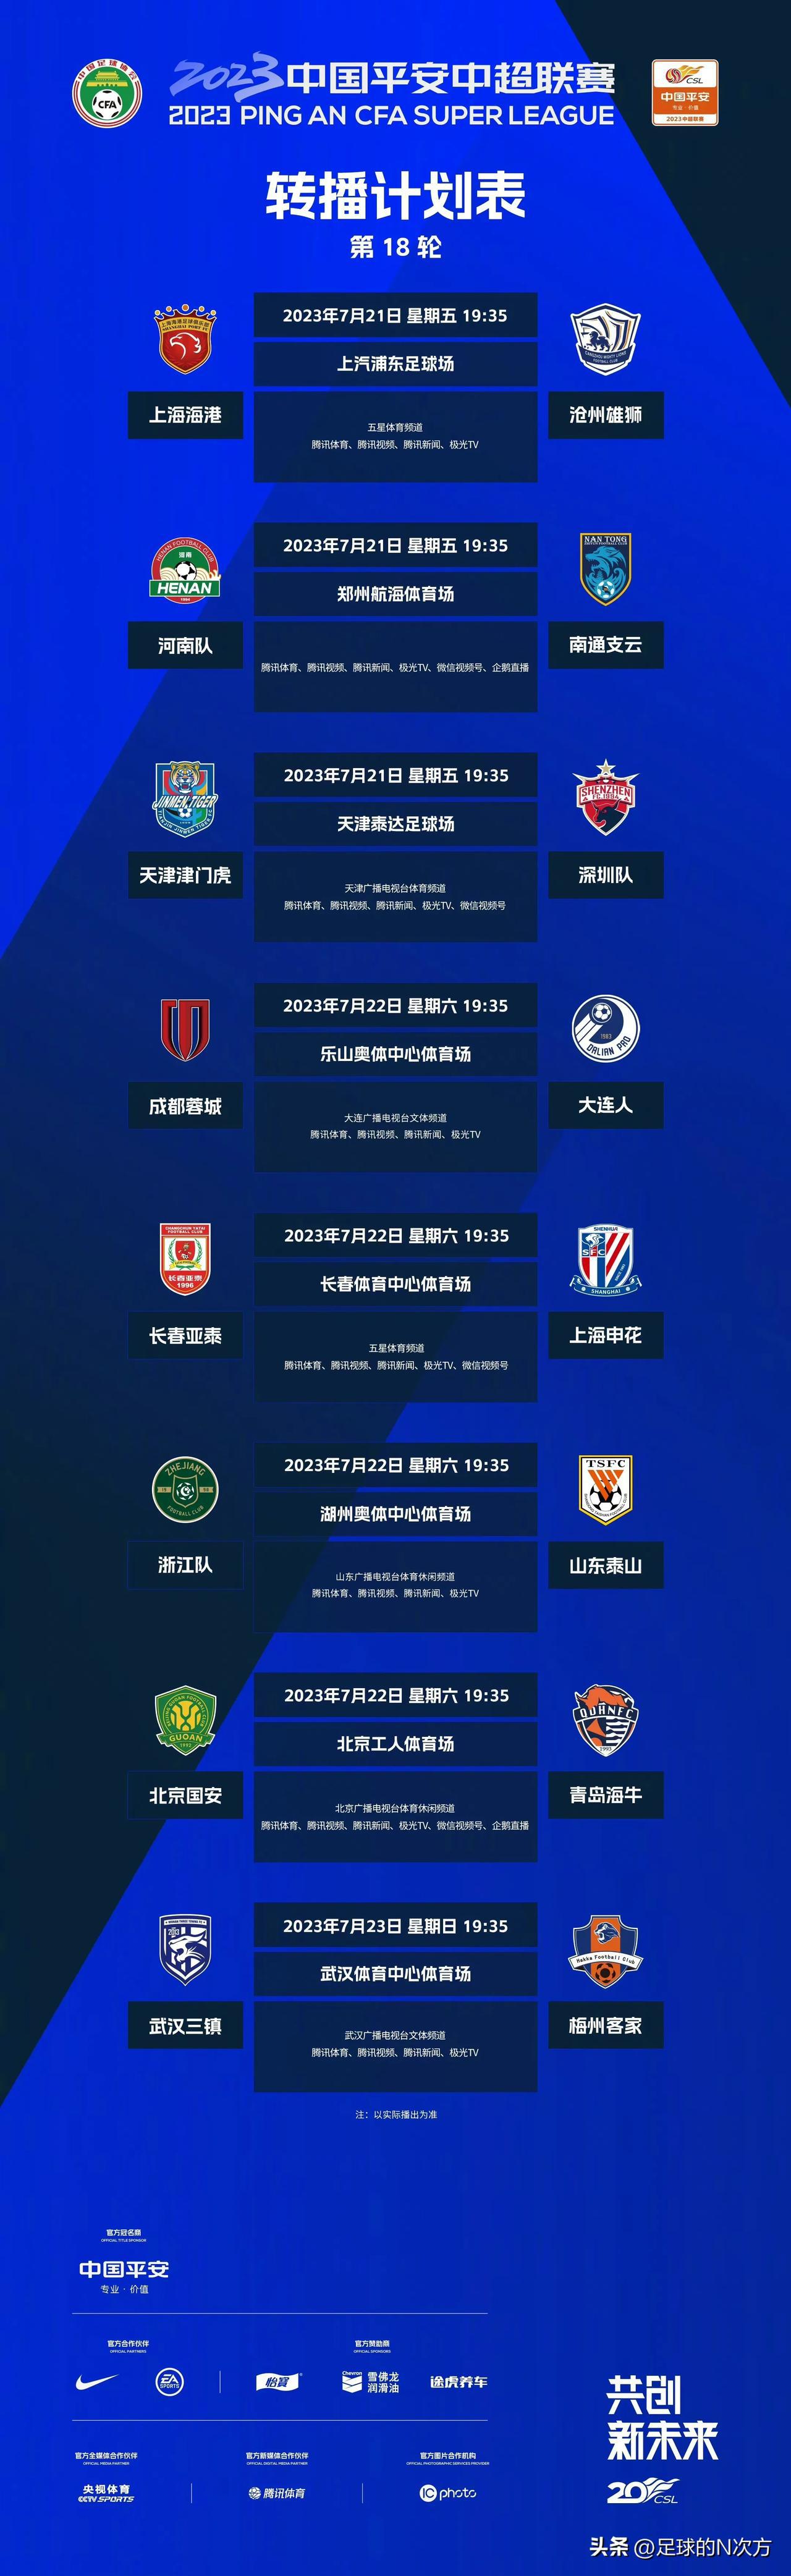 今天是中超联赛第二个比赛日，官方公布今天4场比赛的裁判员安排，具体如下: 
长春(2)